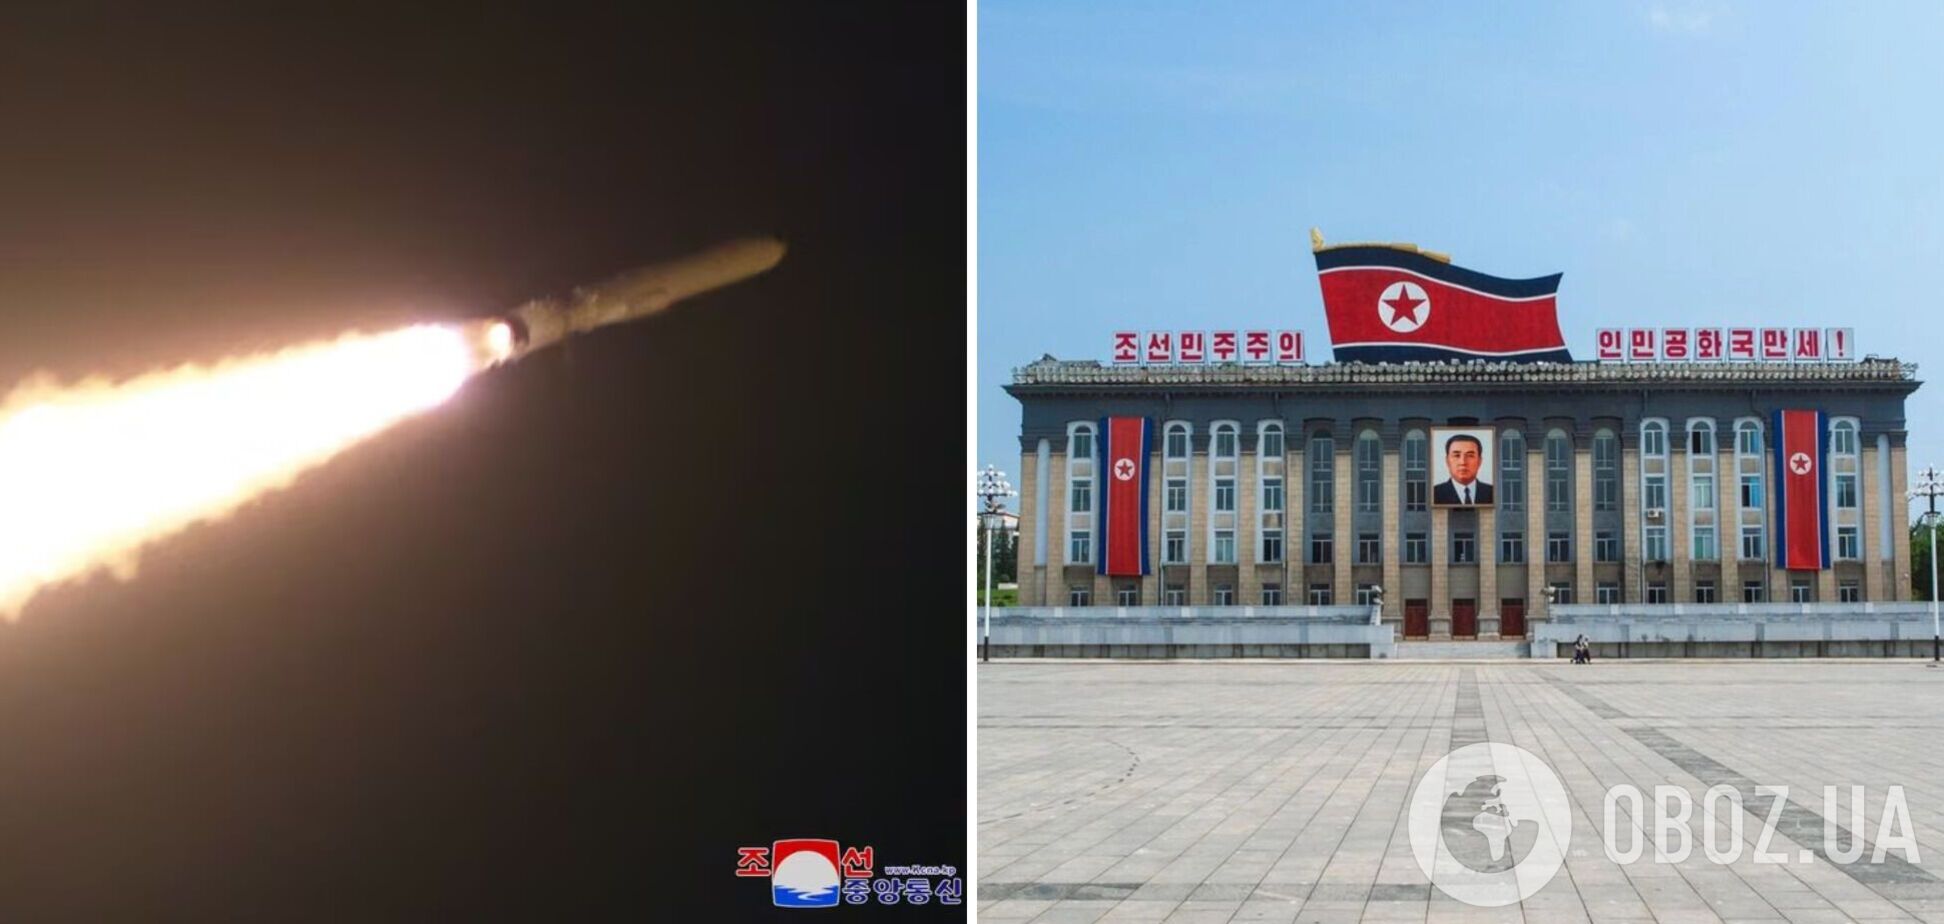 Северная Корея заявила, что испытала новую стратегическую крылатую ракету: что известно